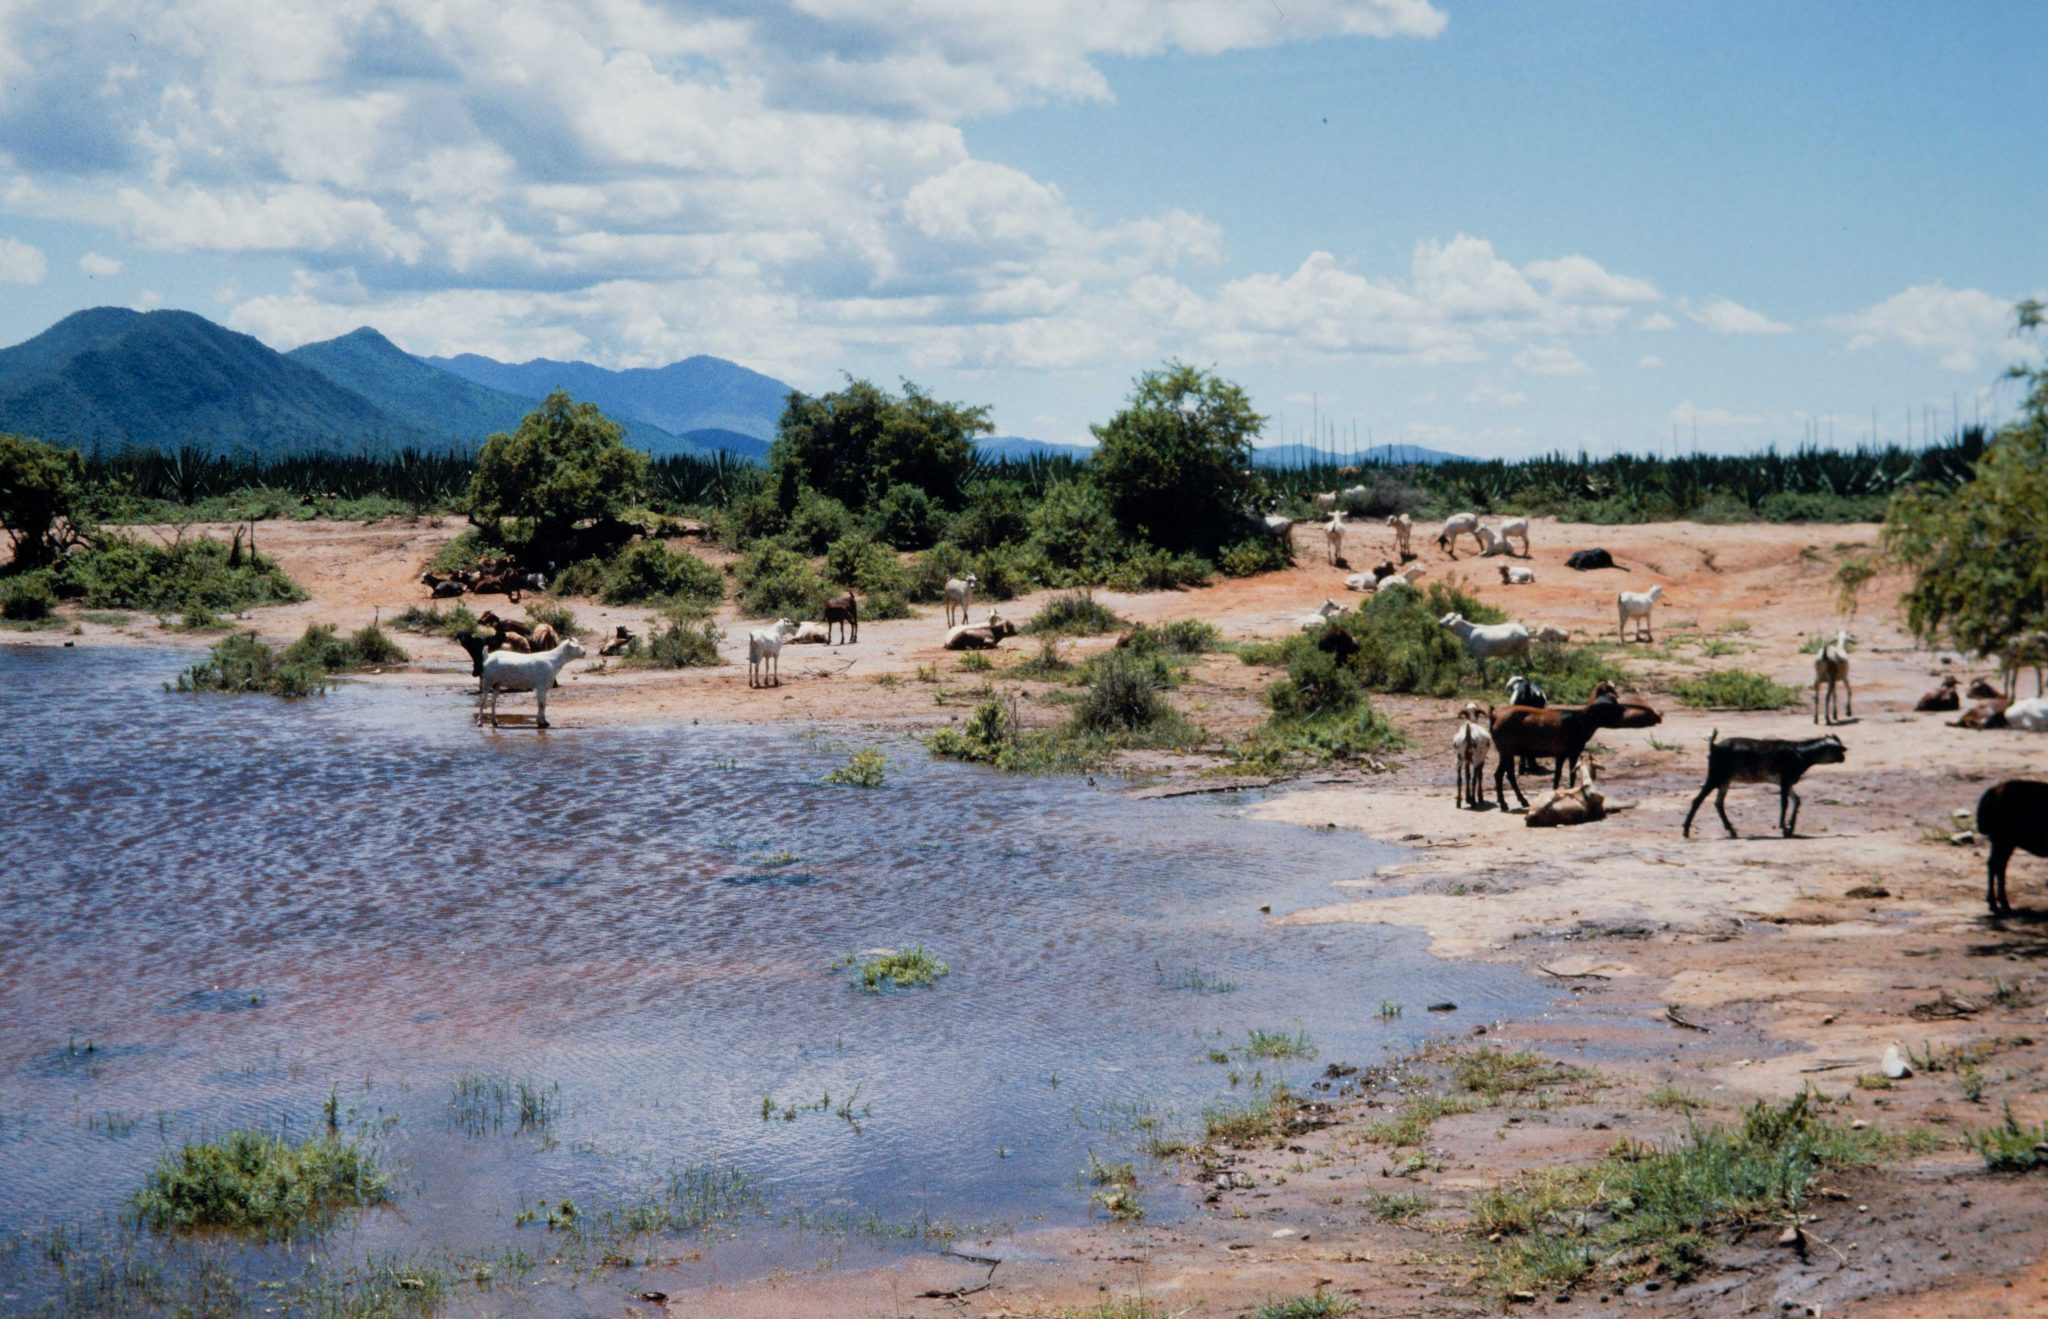 Tanzania – Game Parks 1985 to 1987